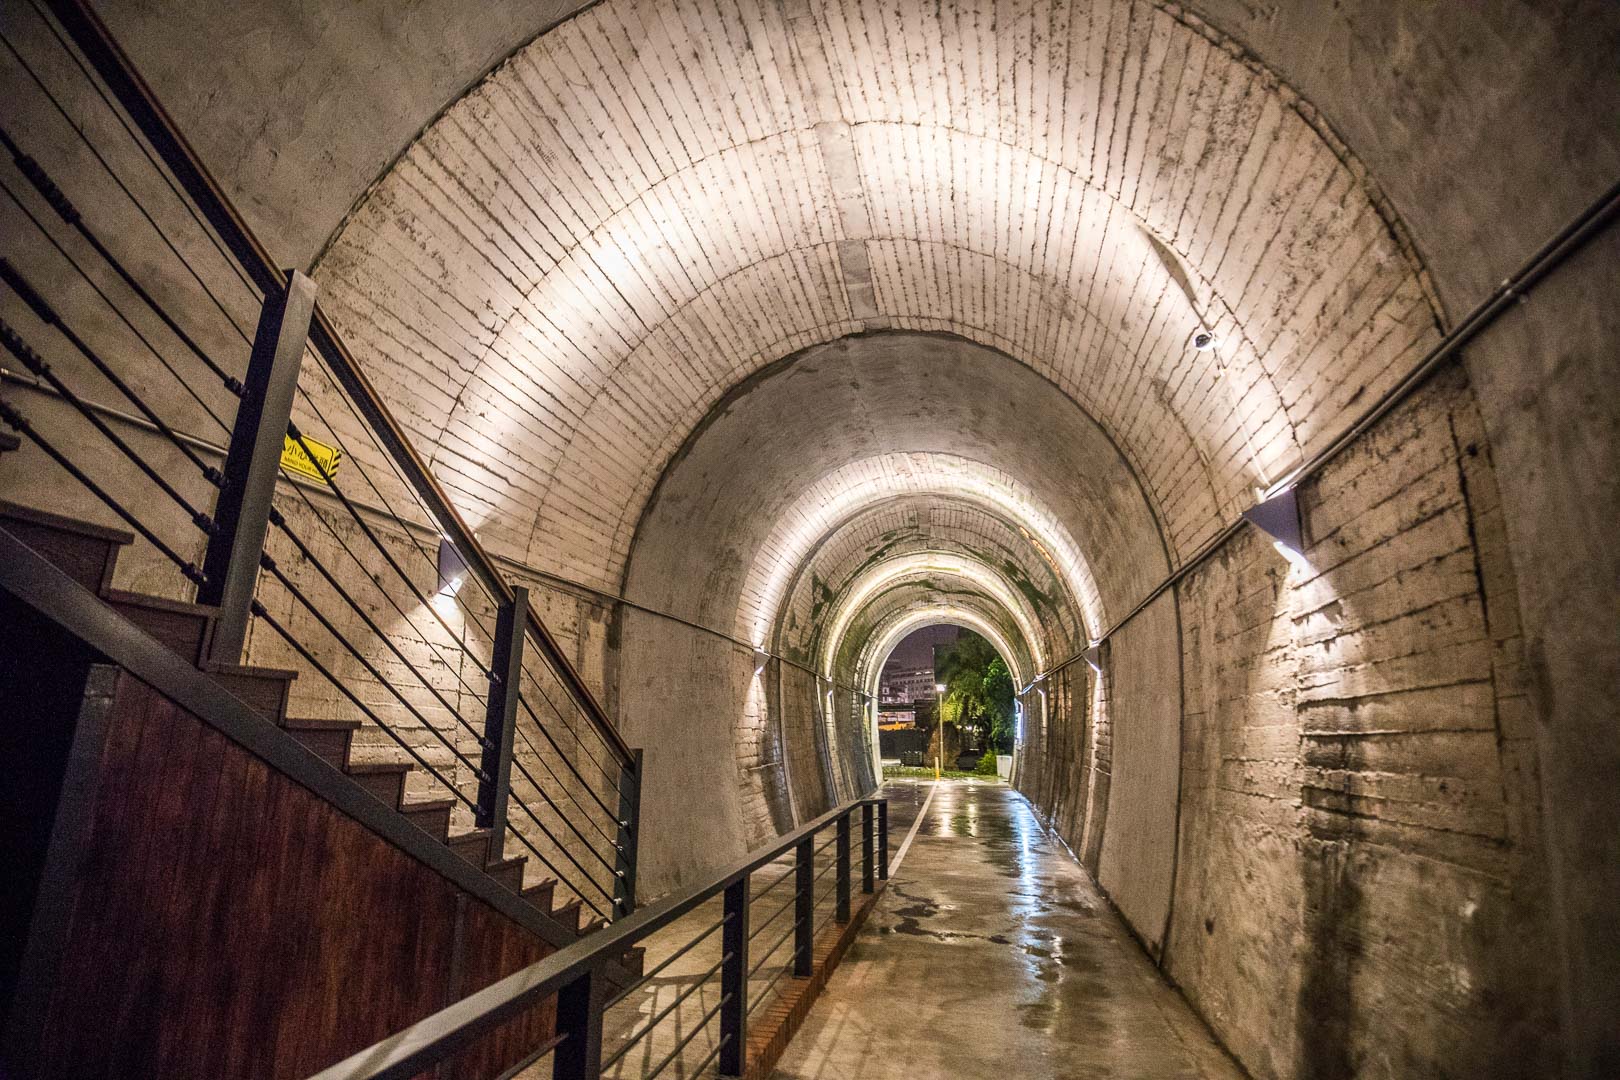 3D海底彩繪隧道,宜蘭蘇東隧道3,宜蘭3D海底彩繪隧道,宜蘭景點,蘇澳景點,蘇東隧道3D海底彩繪隧道,蘇東隧道